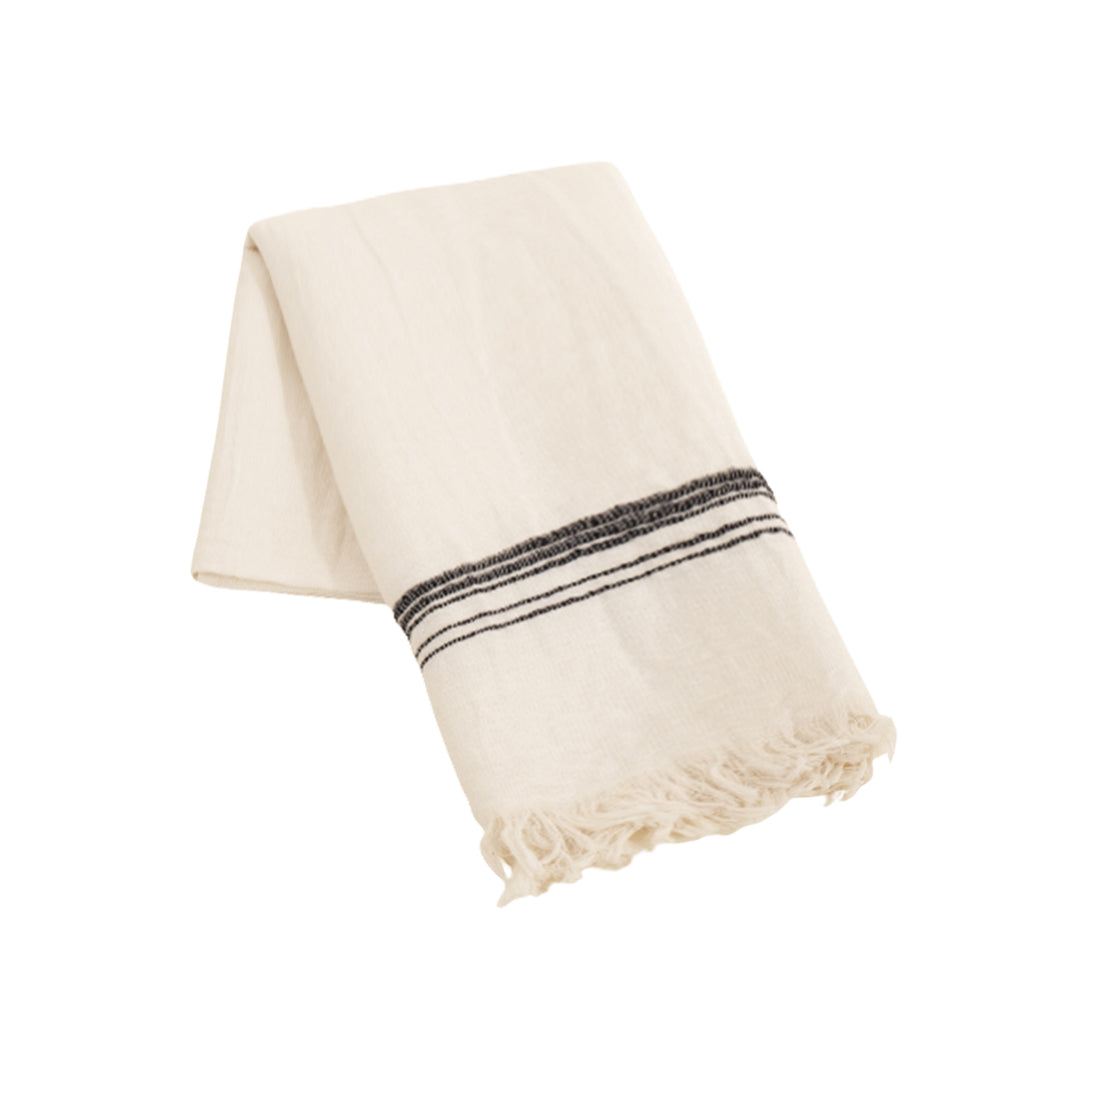 Marl Washed Linen Turkish Towel